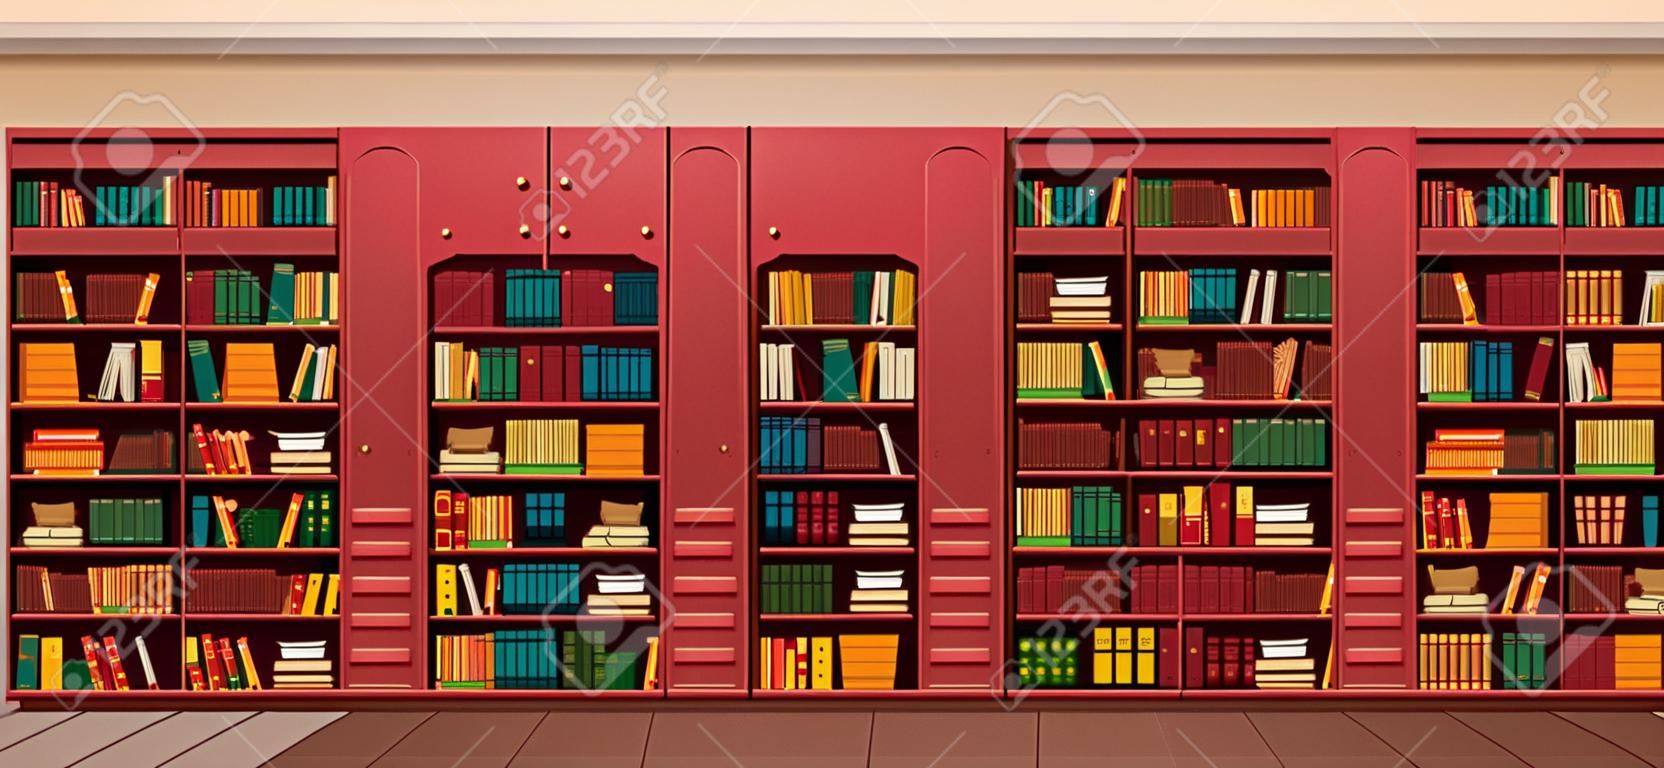 Vector ilustração biblioteca prateleiras estantes biblioteca estilo plano.